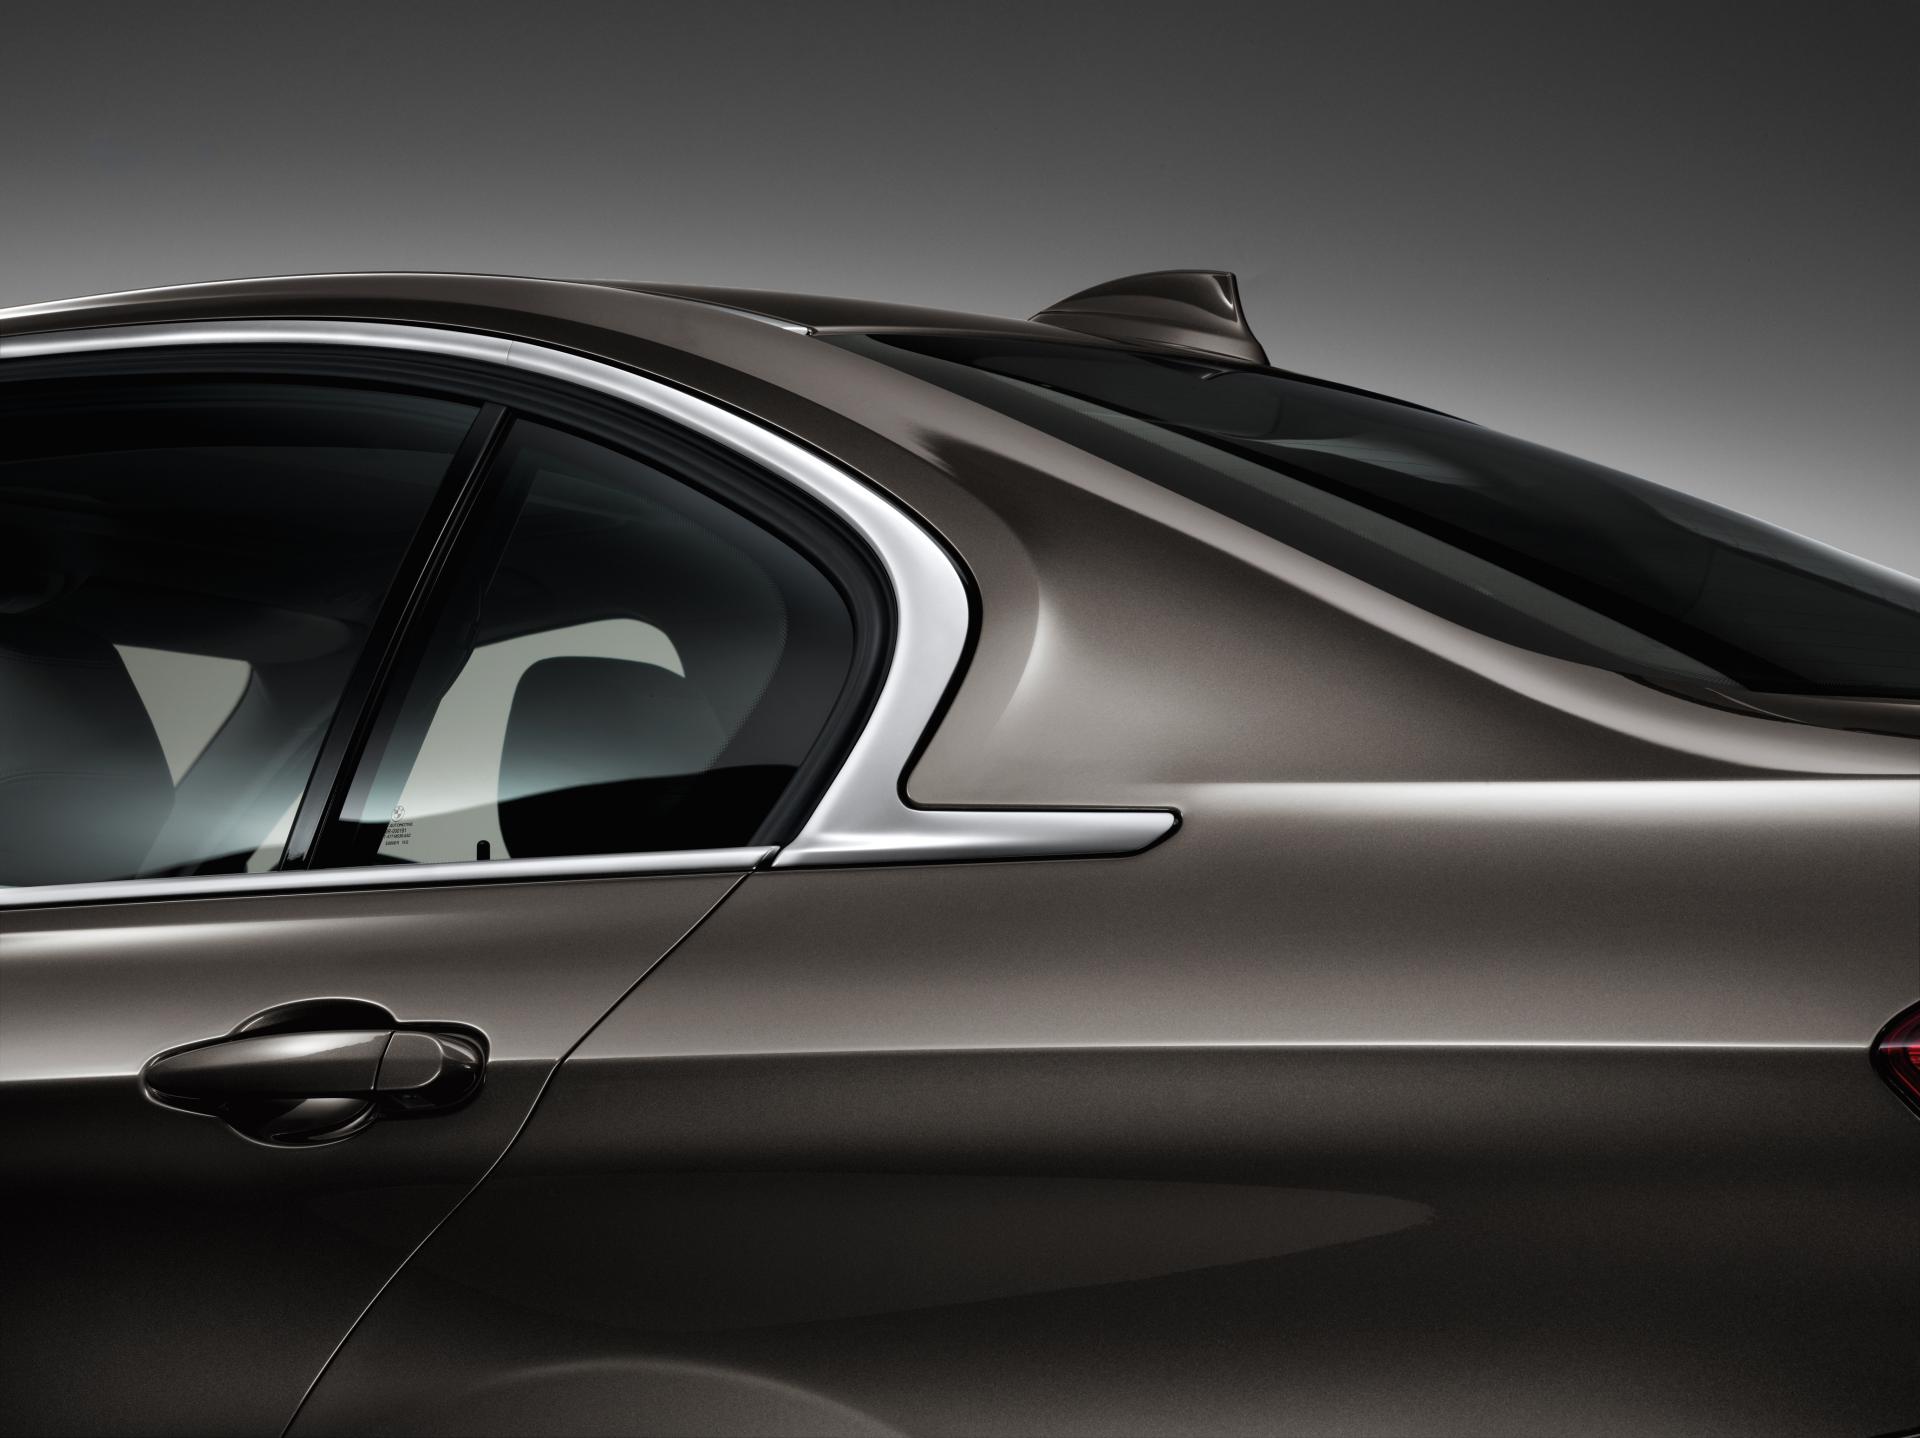 2013 BMW 3-Series Long Wheelbase